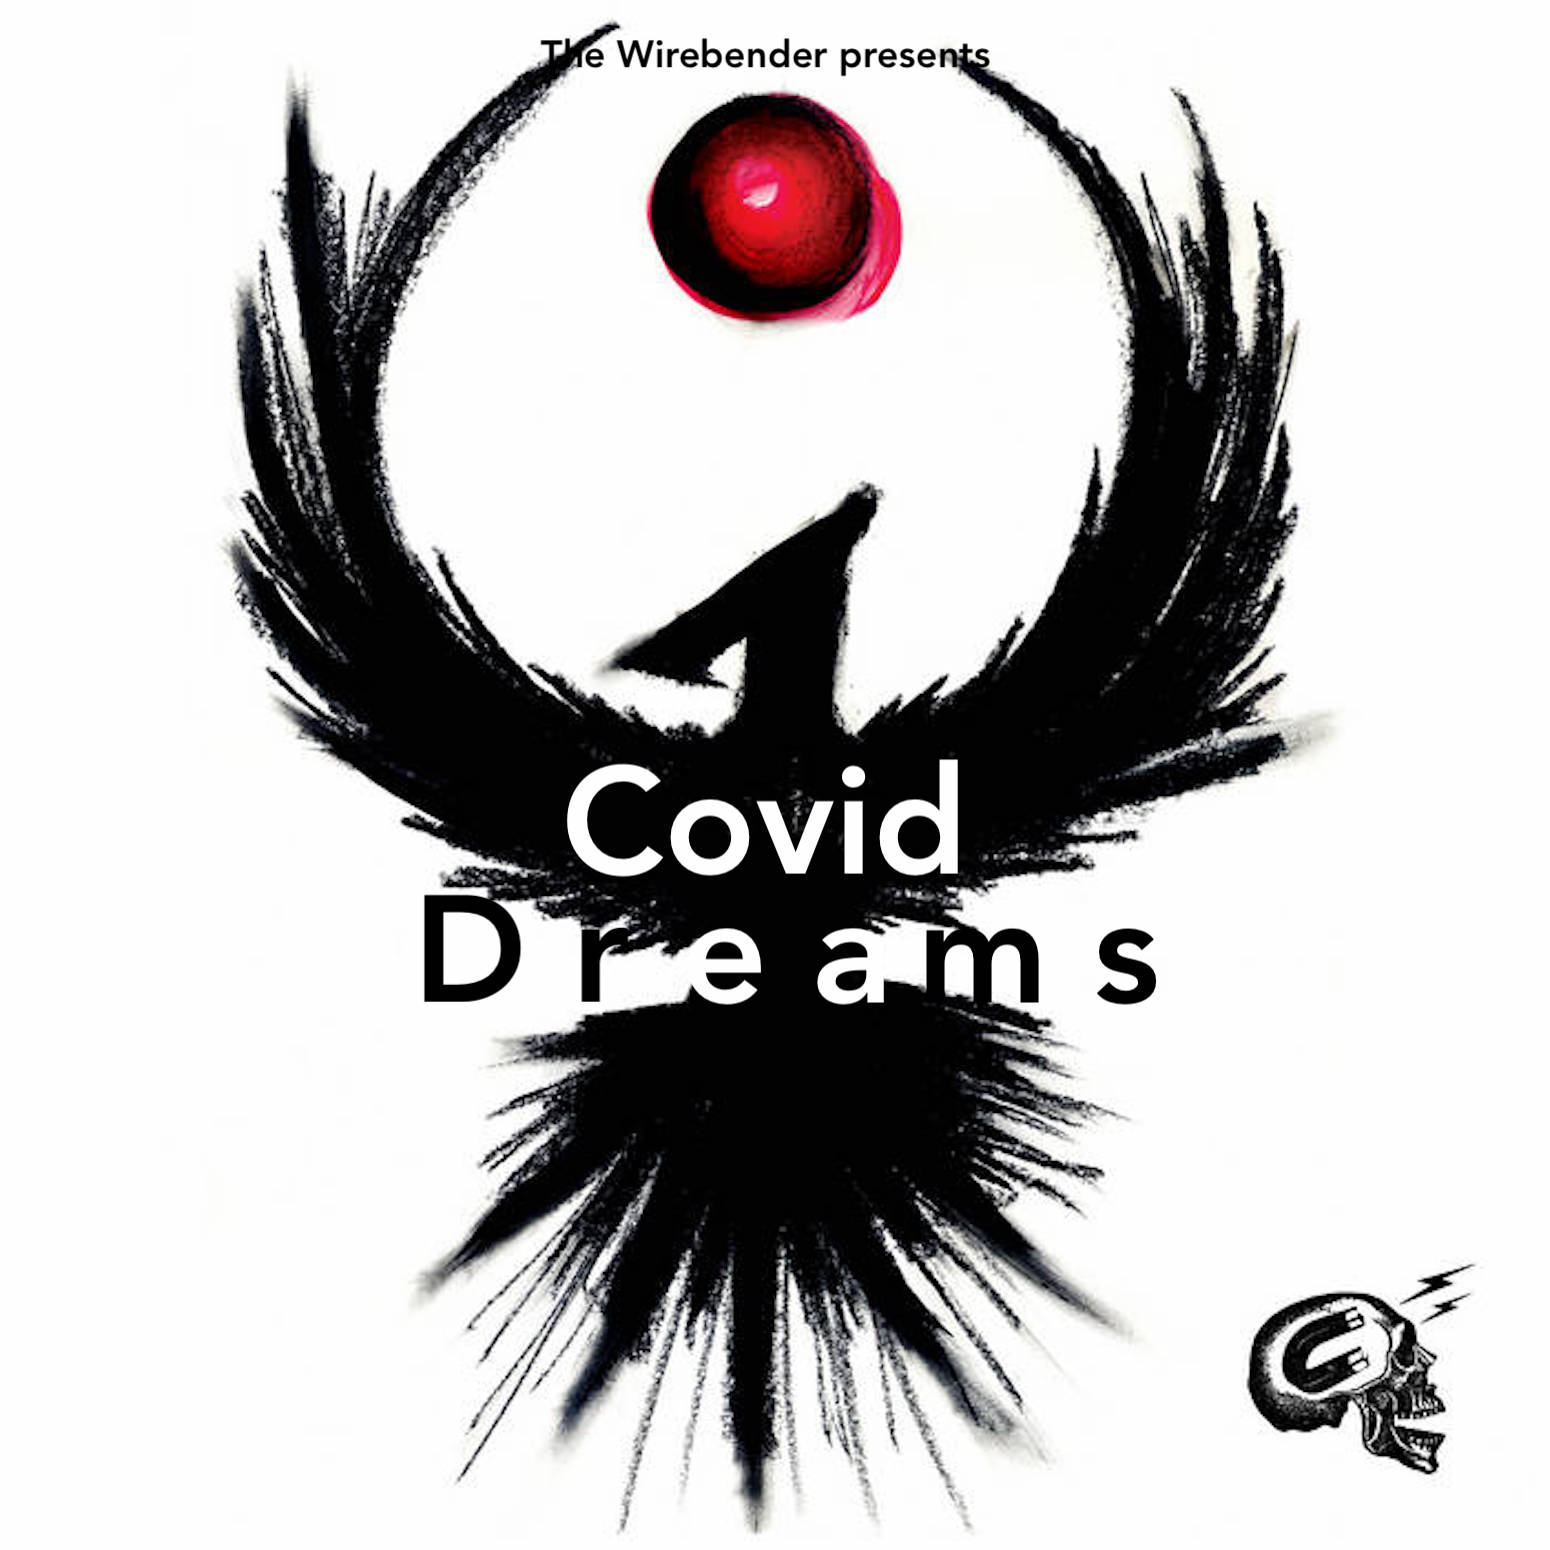 The Wirebender presents Covid Dreams